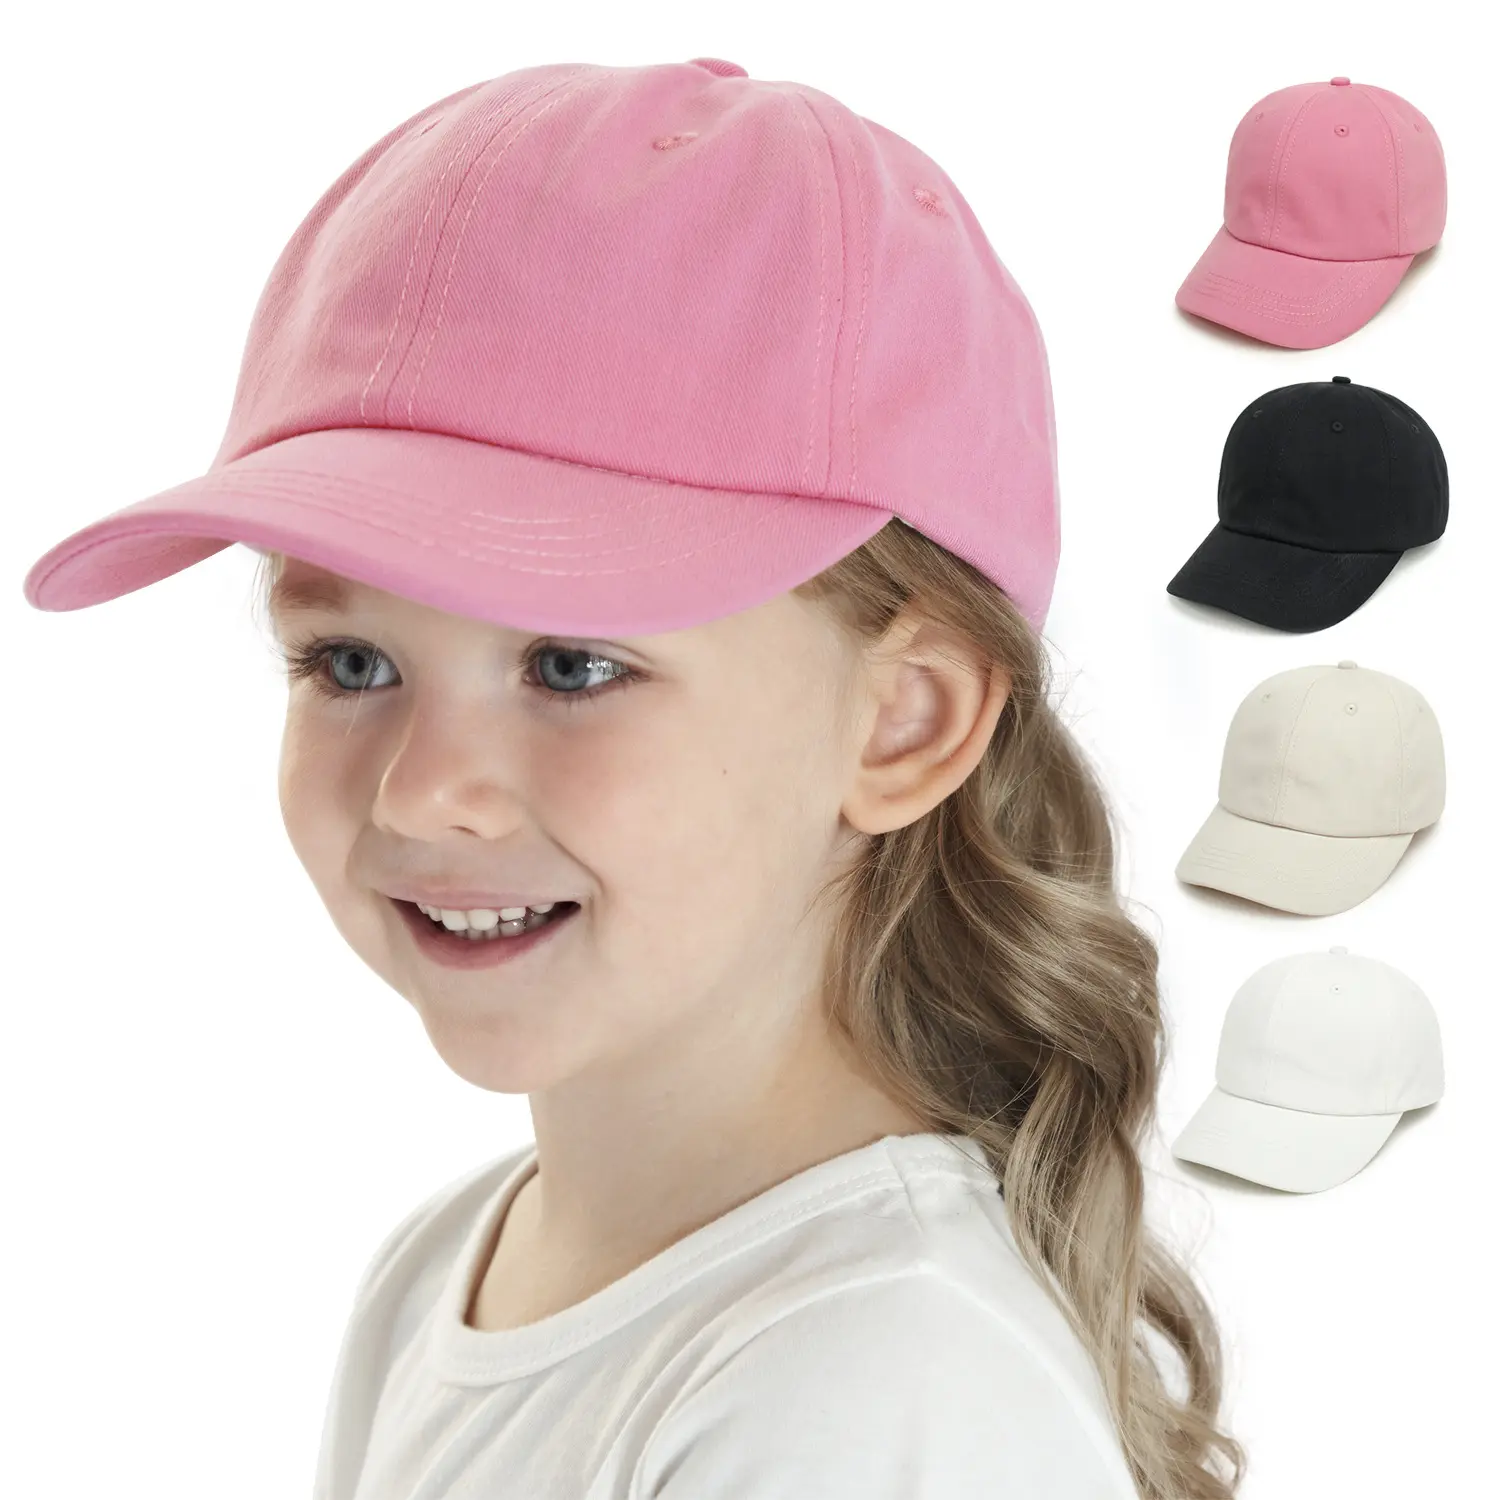 غطاء رأس للأطفال بتصميم مخصص للبيع بسعر الجملة ، غطاء رأس للأطفال بتصميم كاجوال متعدد الاستخدامات ، شعار شخصي مخصص للأطفال